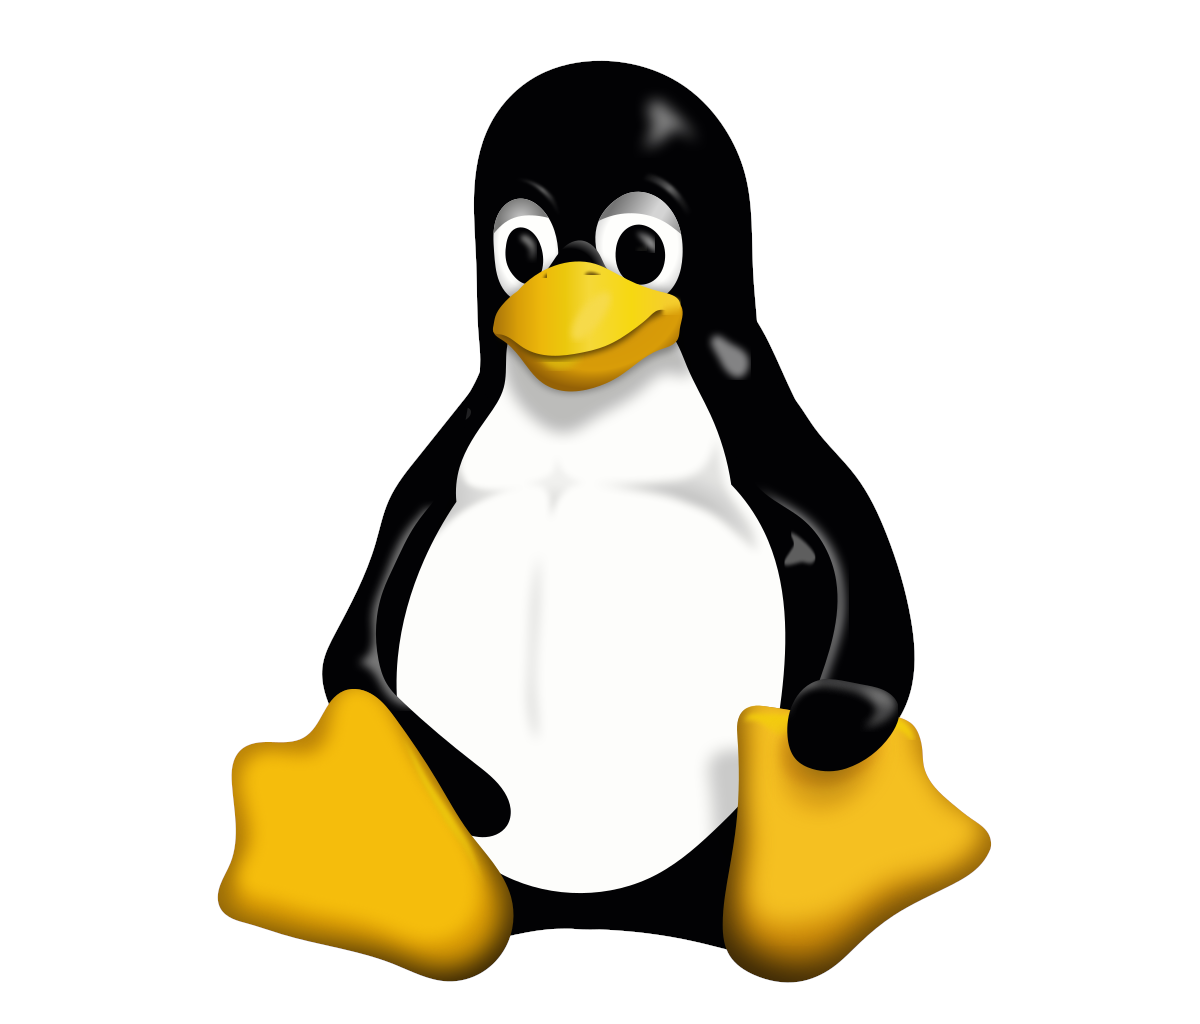 Pourquoi l’adoption de Linux progresse-t-elle en 2020 ?